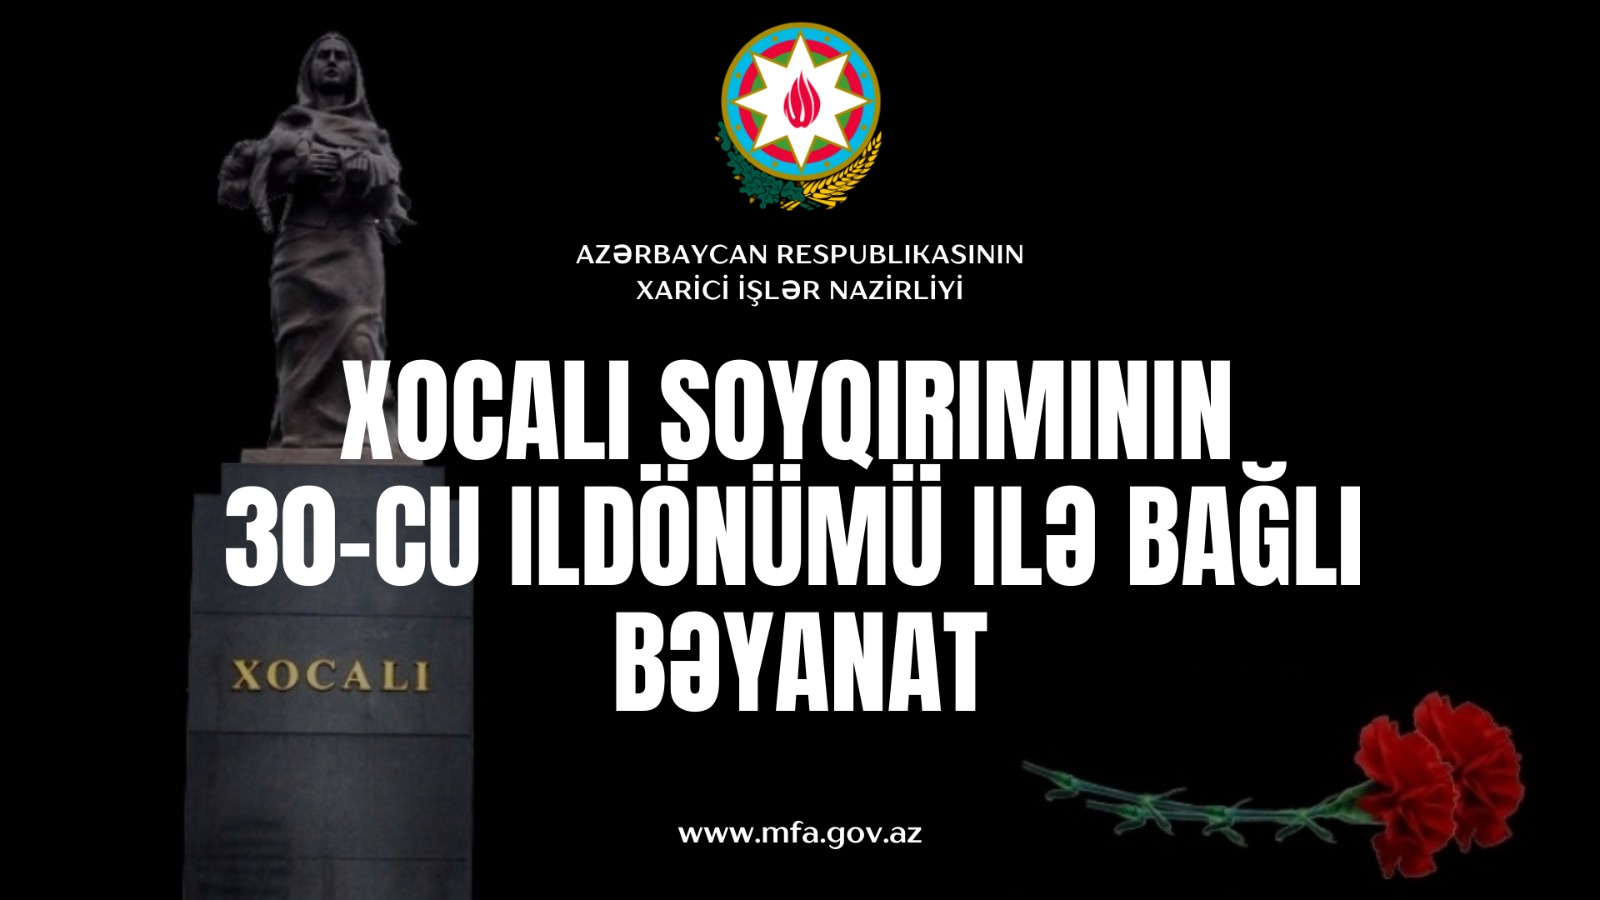 Azərbaycan Respublikası Xarici İşlər Nazirliyi Xocalı soyqırımının 30-cu ildönümü ilə bağlı bəyanat yayıb